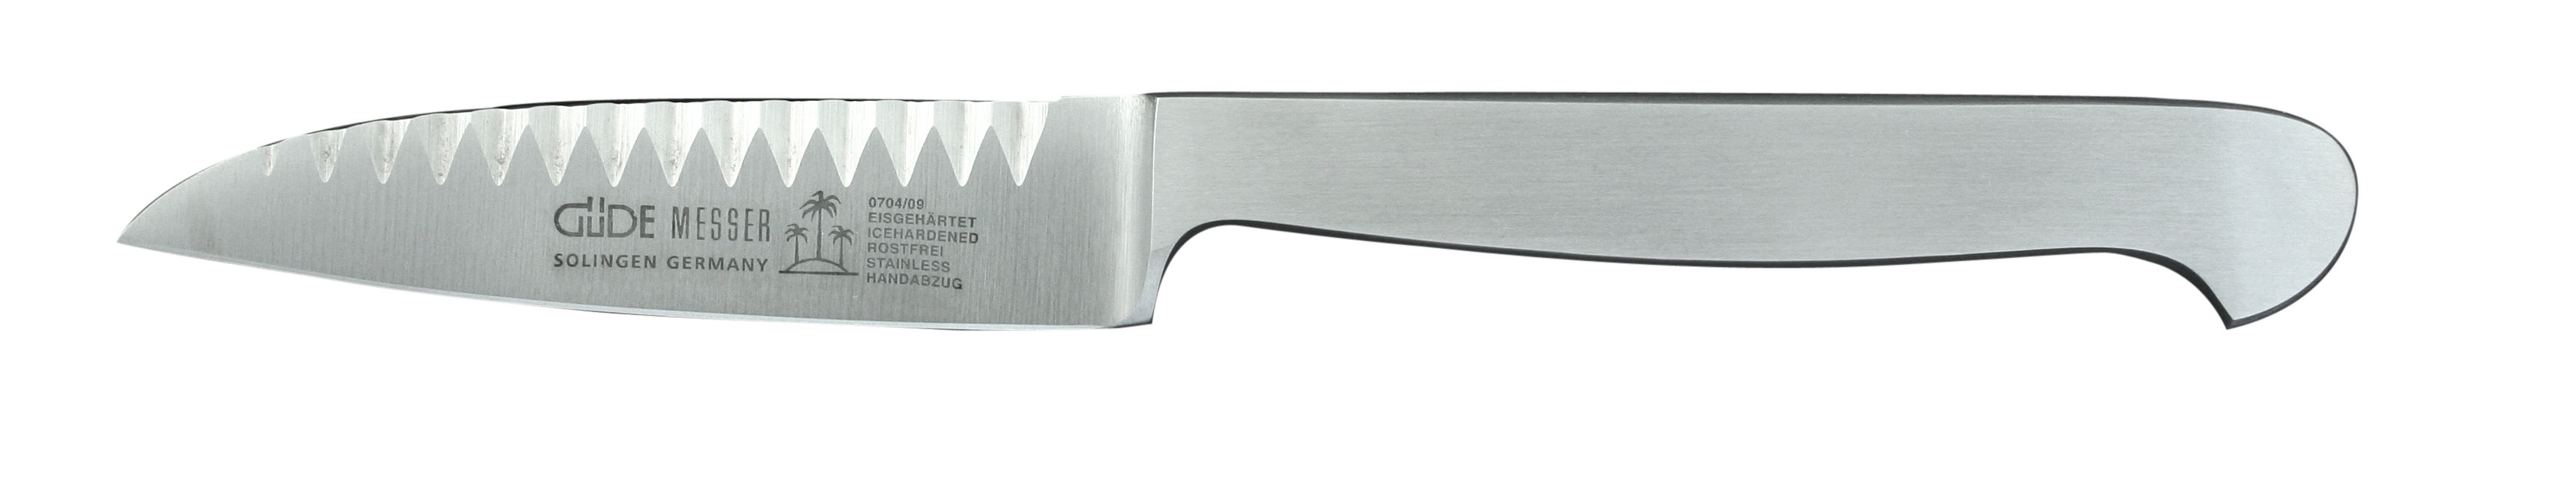 Güde Kappa Buntschneidemesser 9 cm - Klinge und Griff aus CVM-Stahl